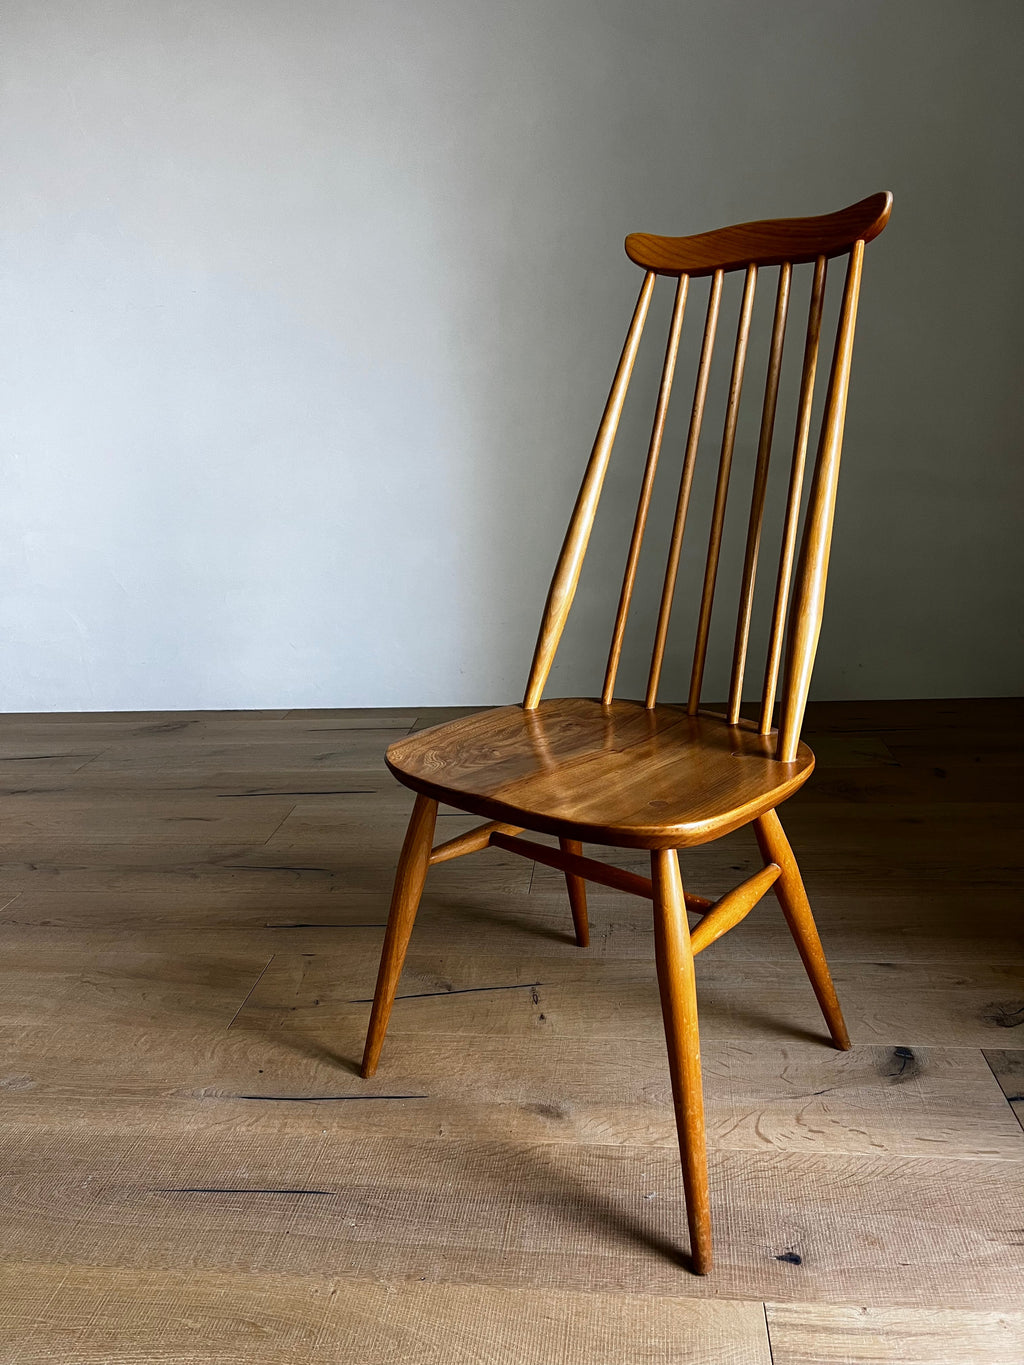 【おまかせ割引】アーコール ゴールドスミス ウィンザー チェア / ercol goldsmith windsor chair '369' #0277